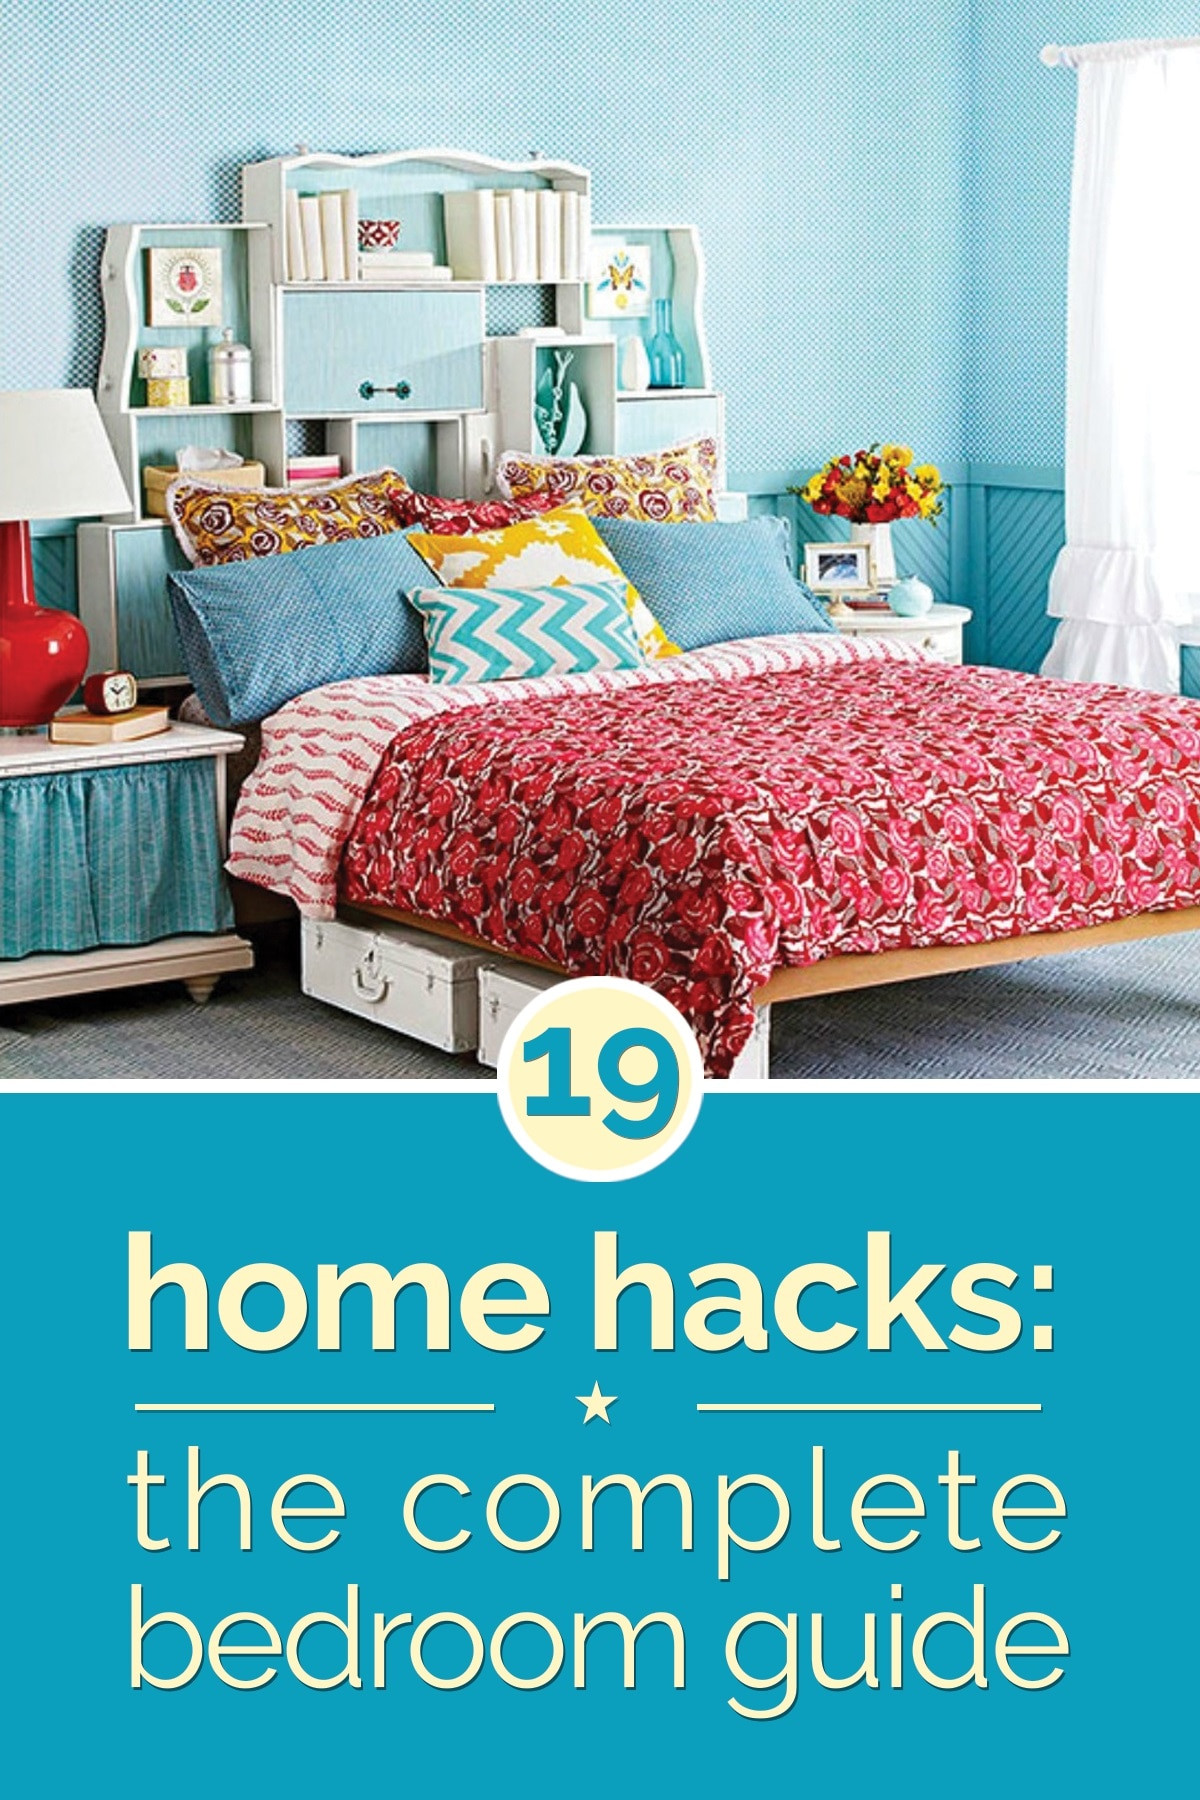 Bedroom Organization Hacks
 Home Hacks 19 Tips to Organize Your Bedroom thegoodstuff